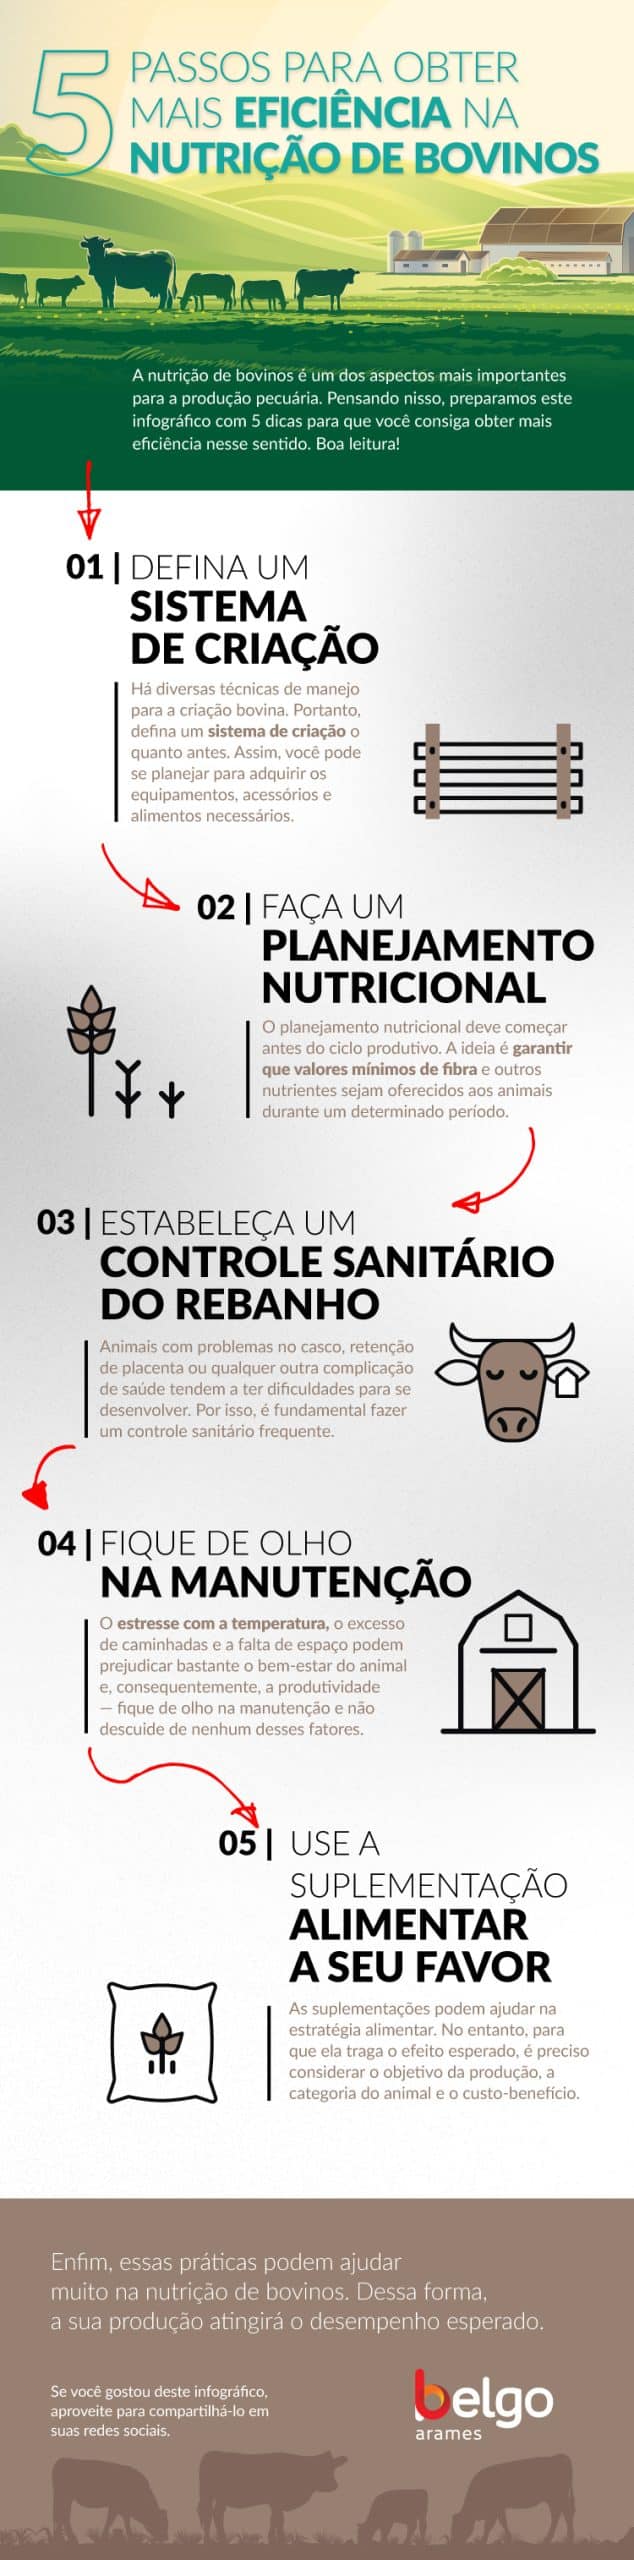 infográfico: 5 passos para obter mais eficiencia na nutrição de bovinos